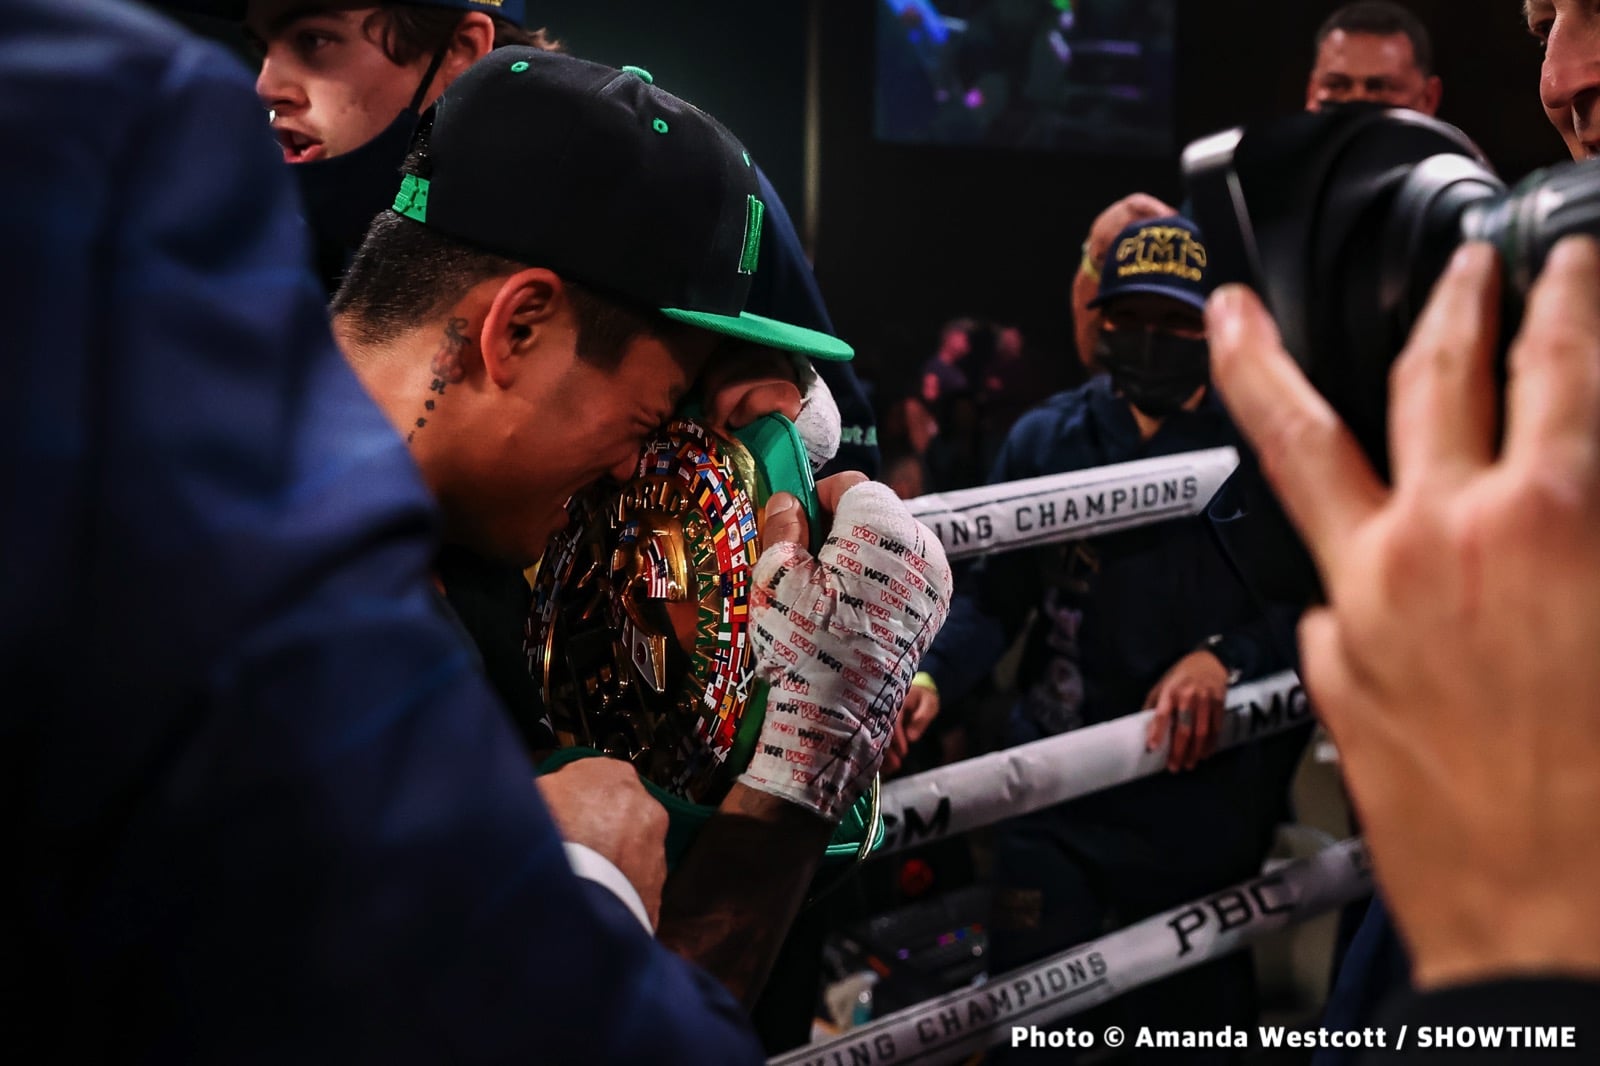 Mark Magsayo boxing image / photo